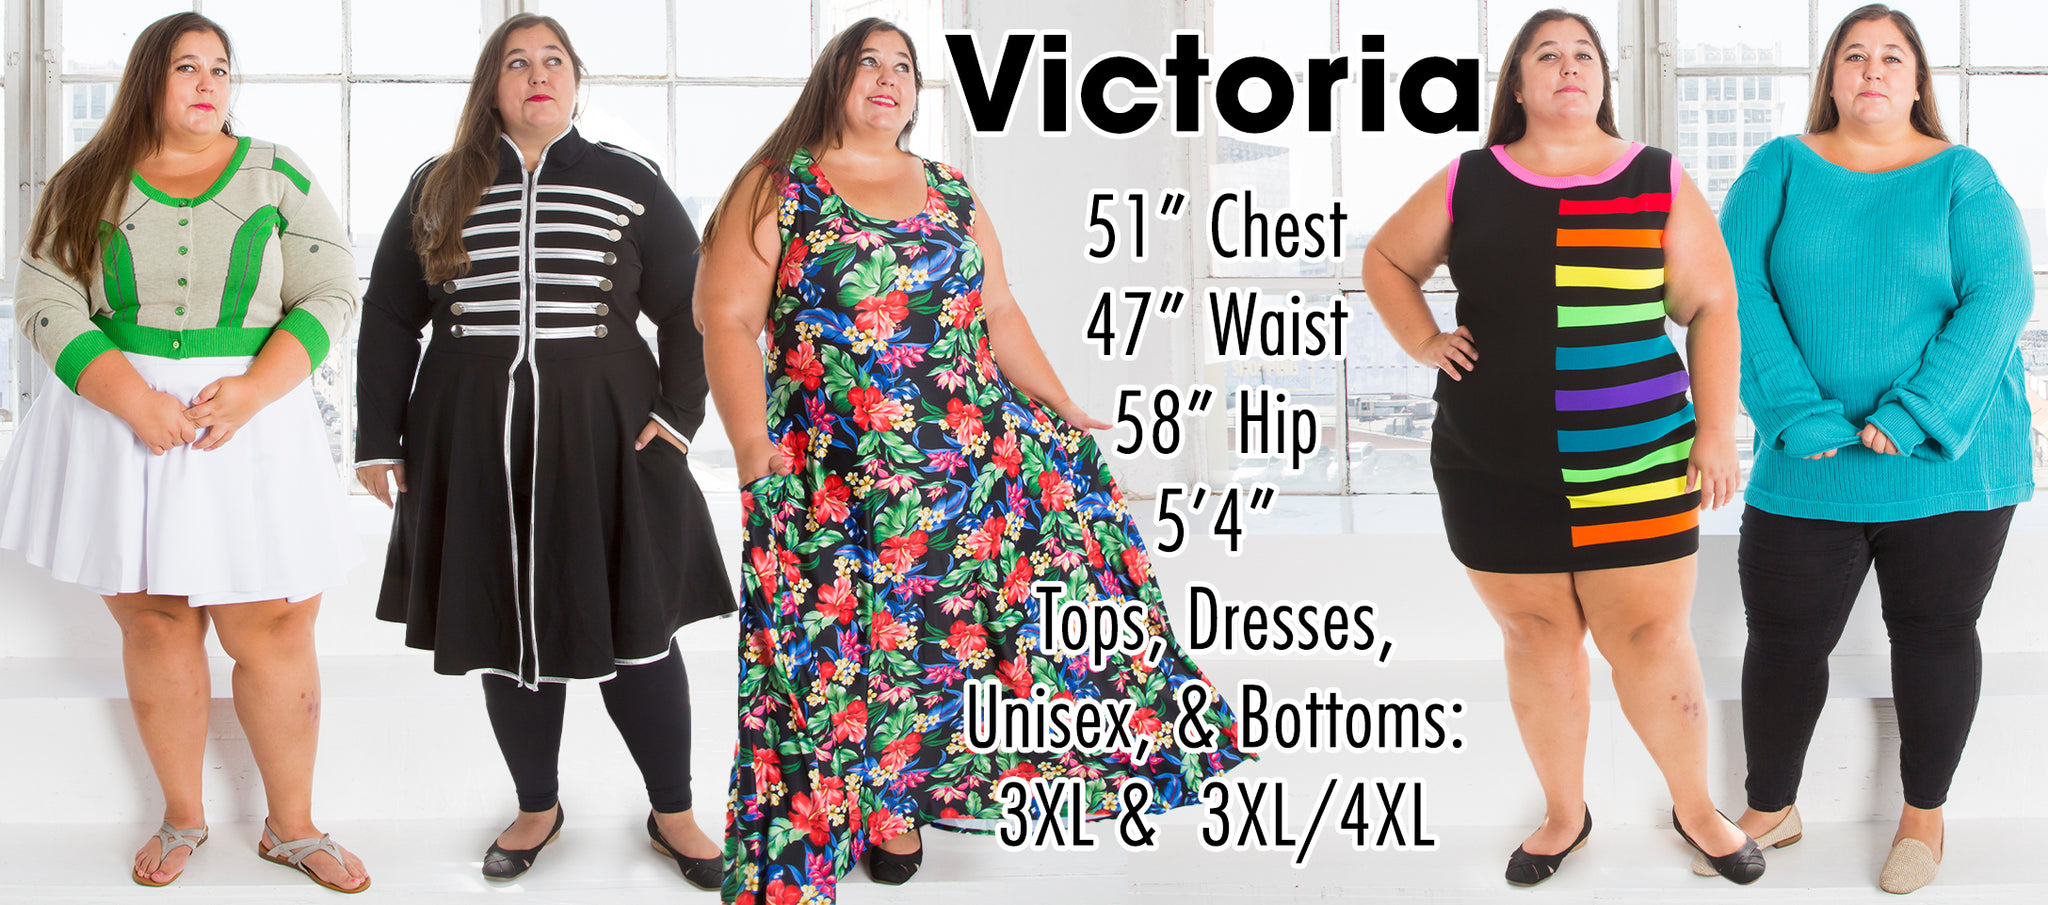 Victoria - 51” Chest 47” Waist 58” Hip 5’4” Height - Tops, Dresses, Unisex, & Bottoms: 3XL & 3XL/4XL